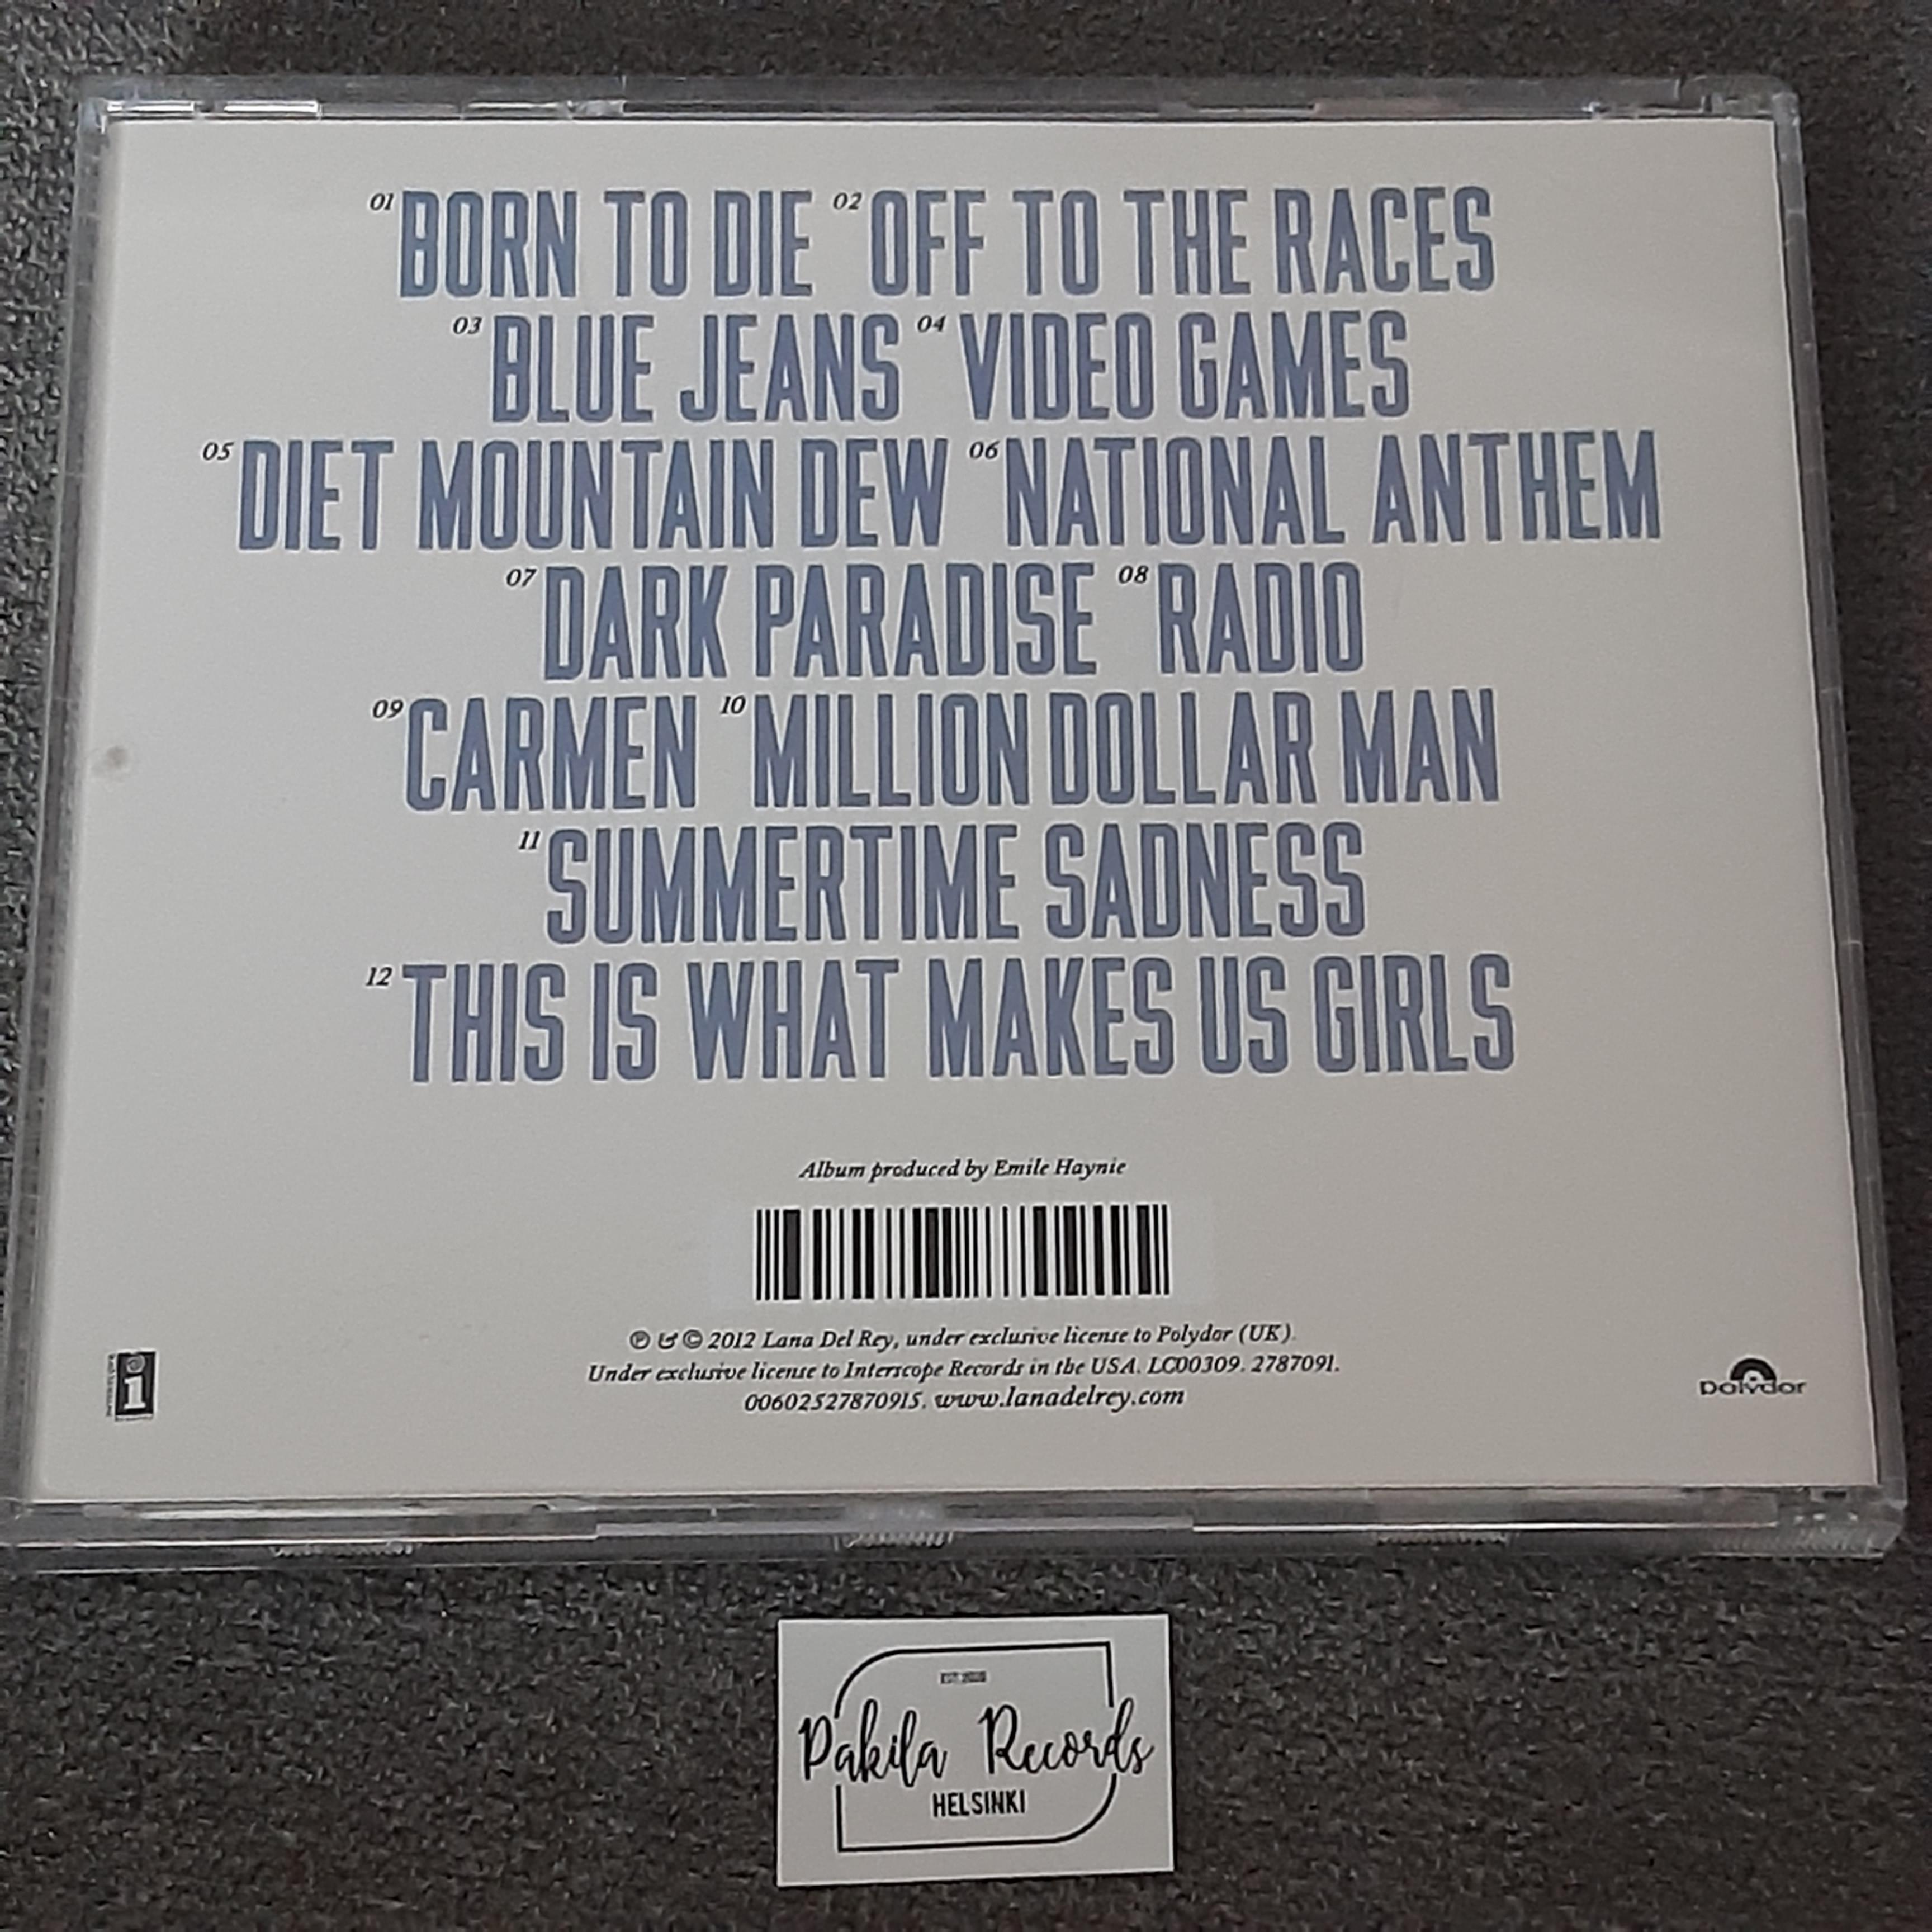 Lana Del Ray - Born To Die - CD (käytetty)